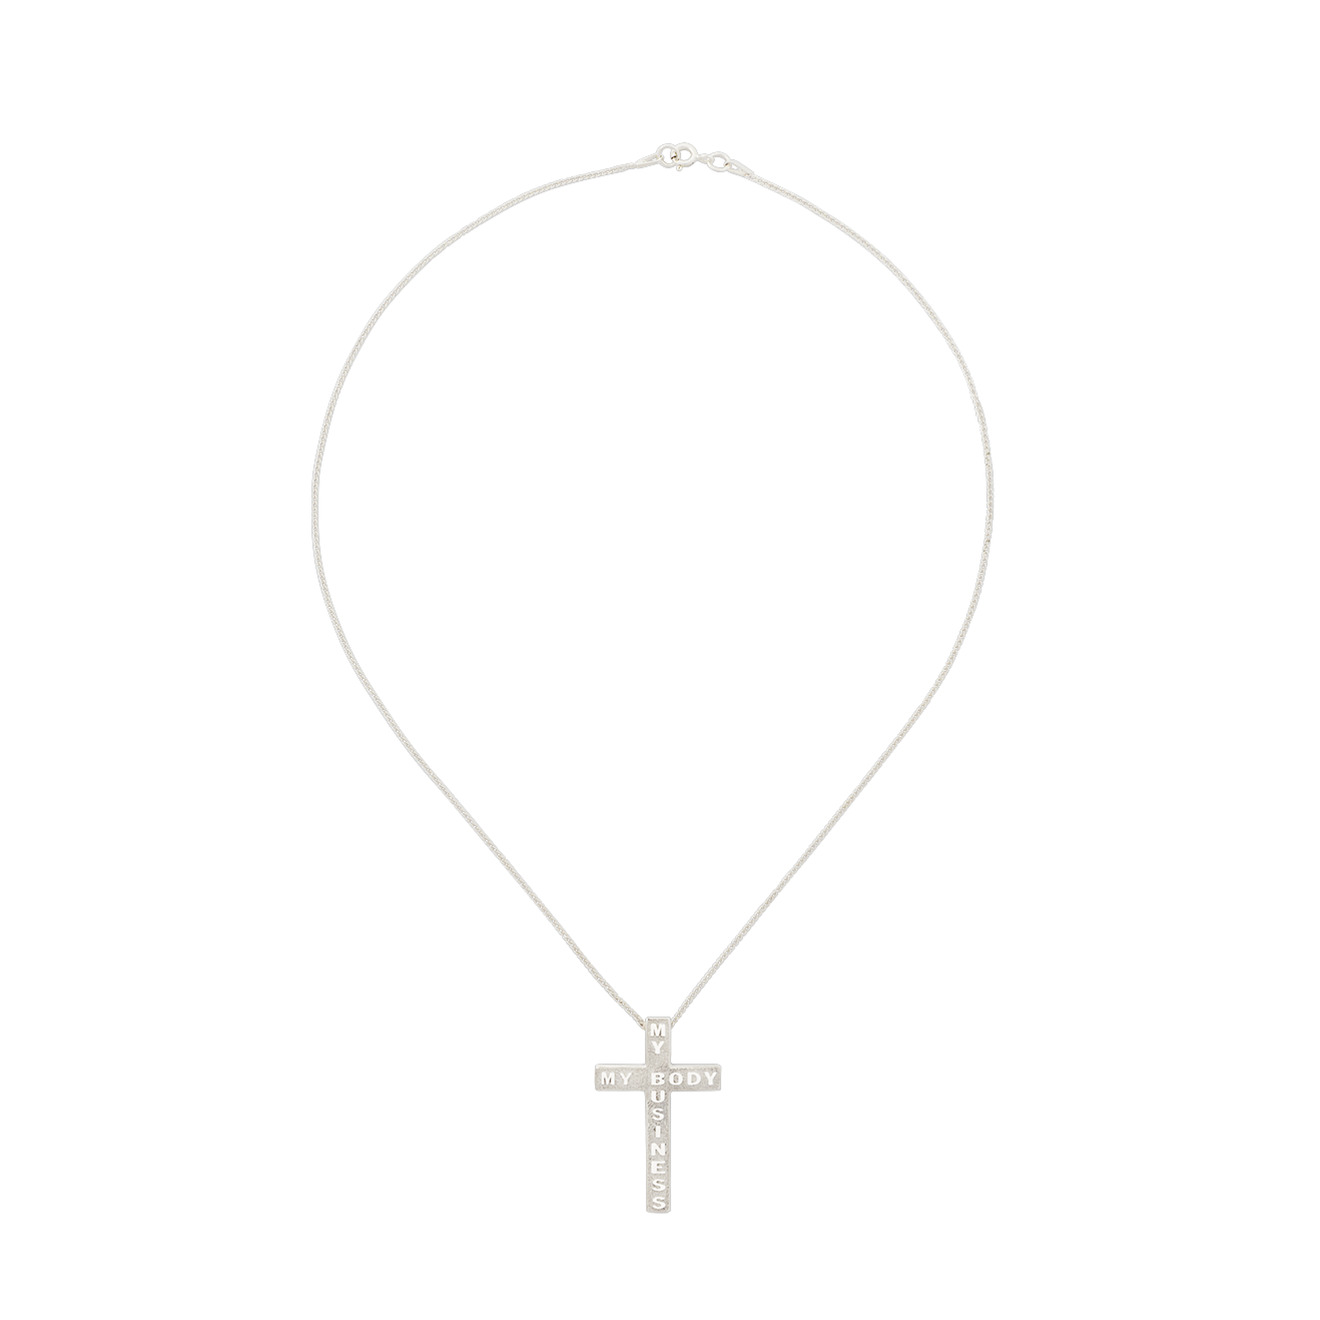 AMARIN Jewelry Серебряная подвеска на цепочке из коллекции My Body My Business серебряная подвеска иконка святой лик